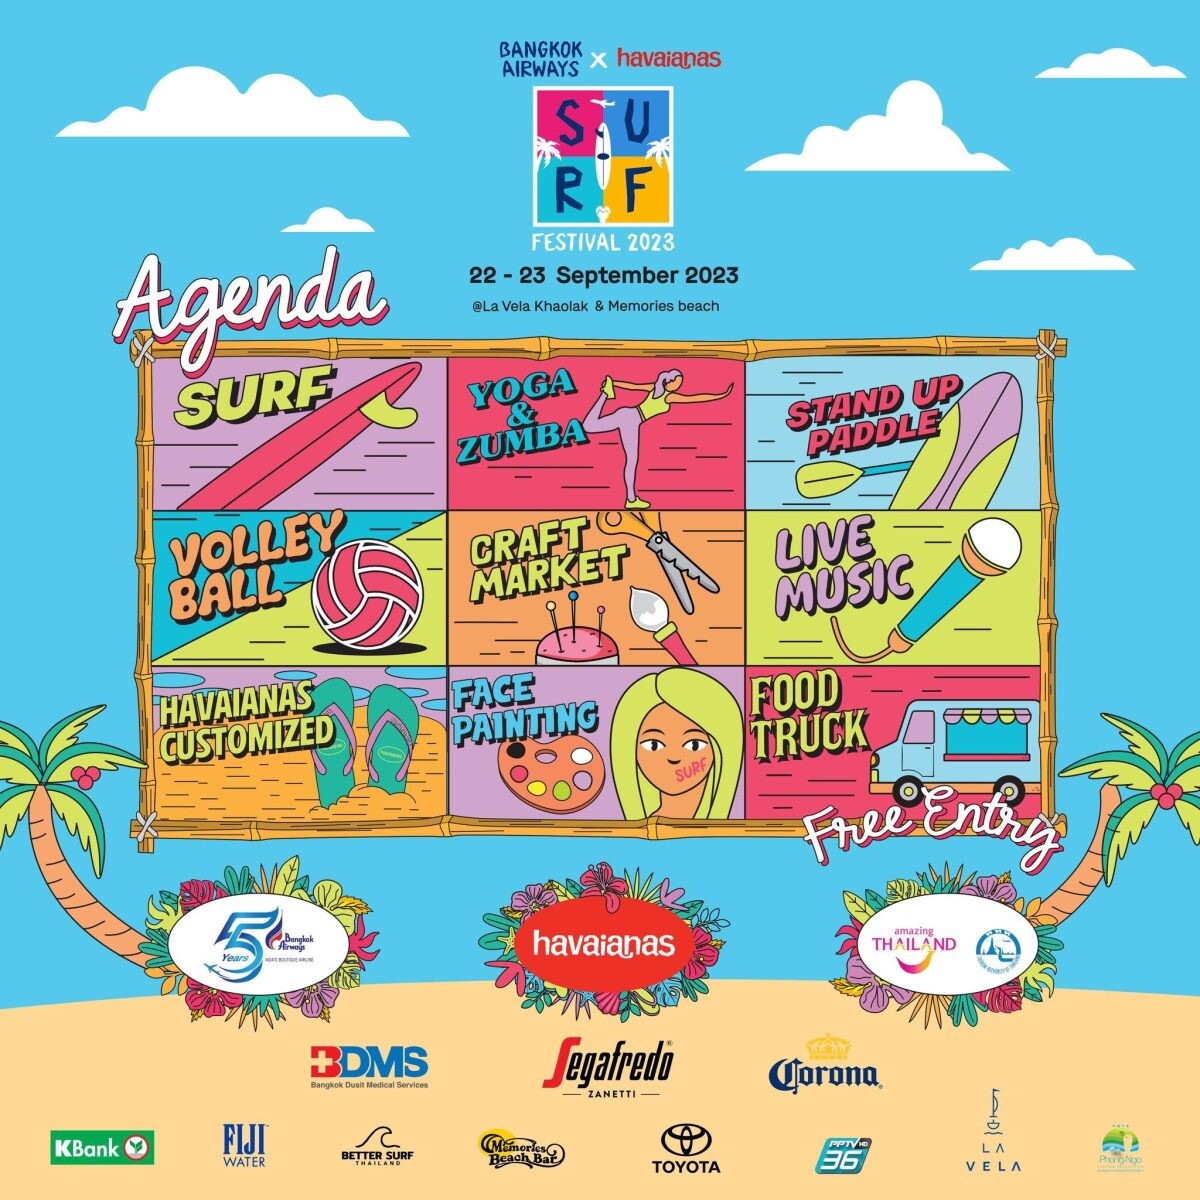 บางกอกแอร์เวย์ส ชวนคนรักกีฬาเอ็กซ์ตรีม สัมผัสประสบการณ์ความสนุกในงาน "Bangkok Airways x Havaianas Surf Festival 2023" 22 - 23 กันยายนนี้